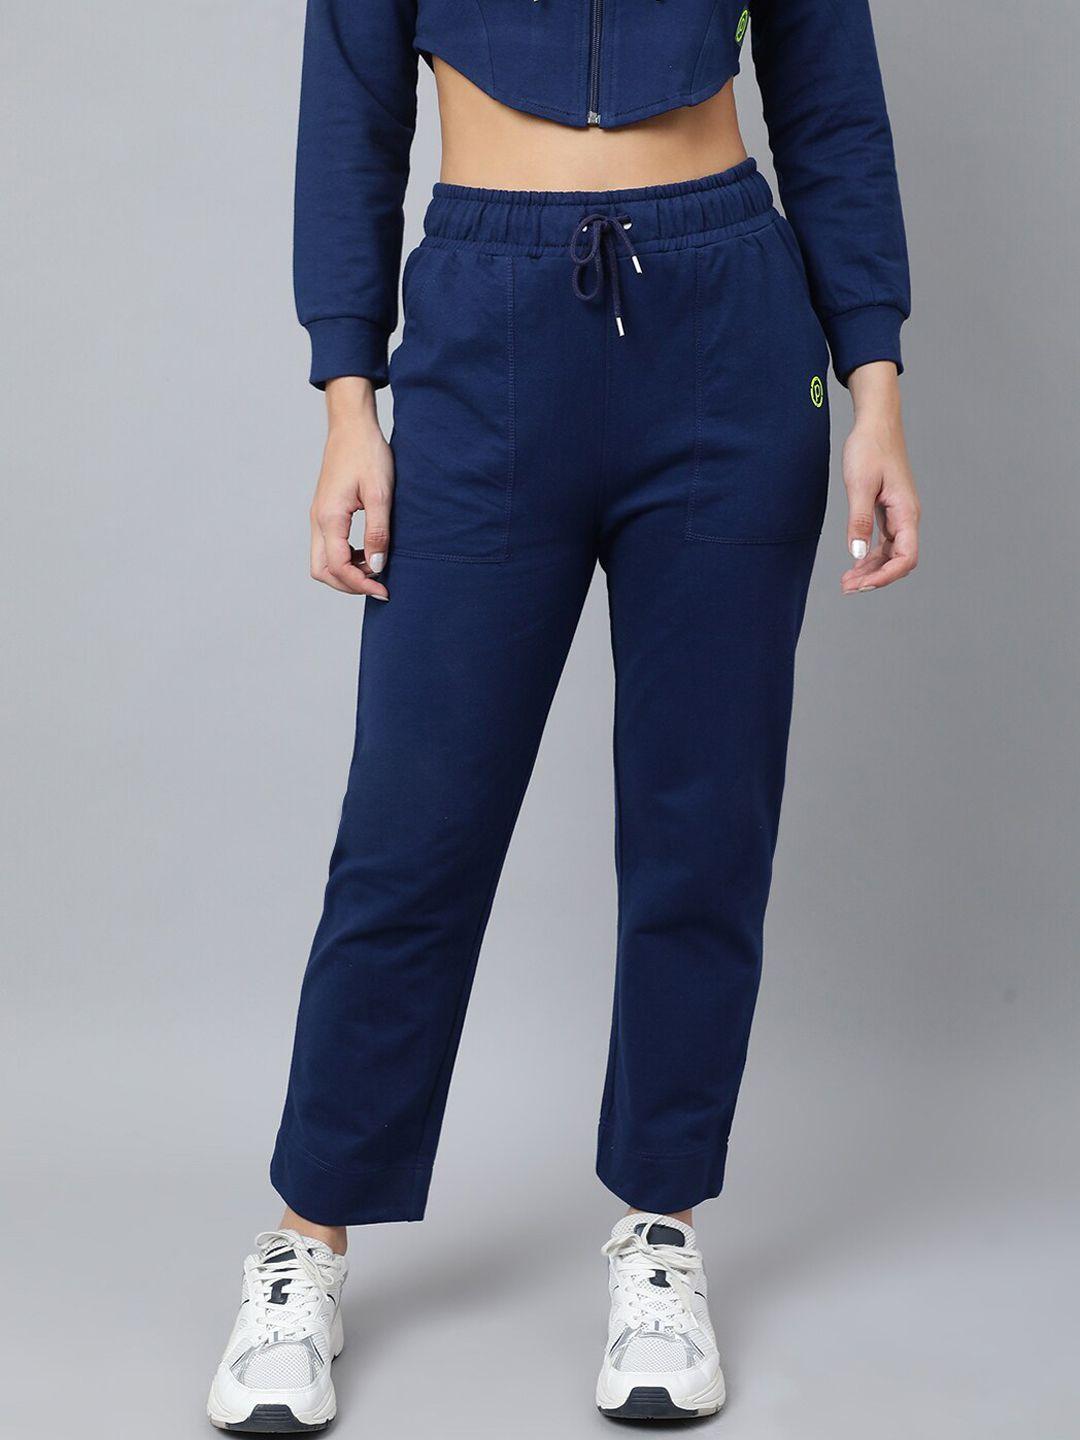 pritla women navy blue solid cotton track pants